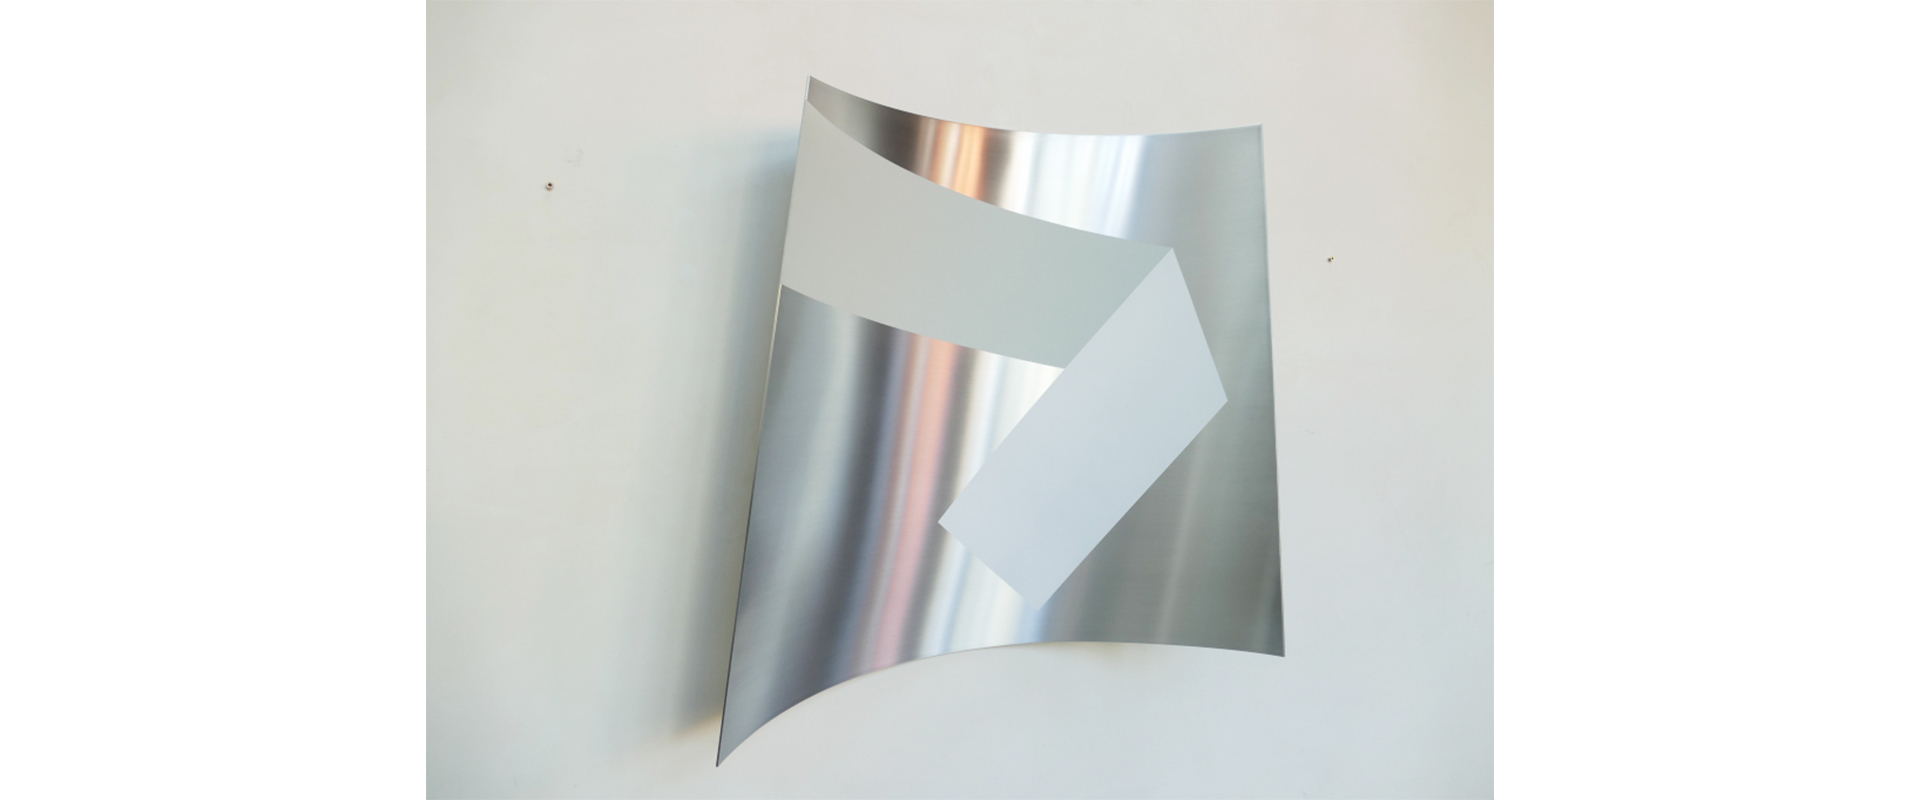 Raumzeichen #474 – 2021, Lack auf Aluminium, 78 x 80 x 8 cm